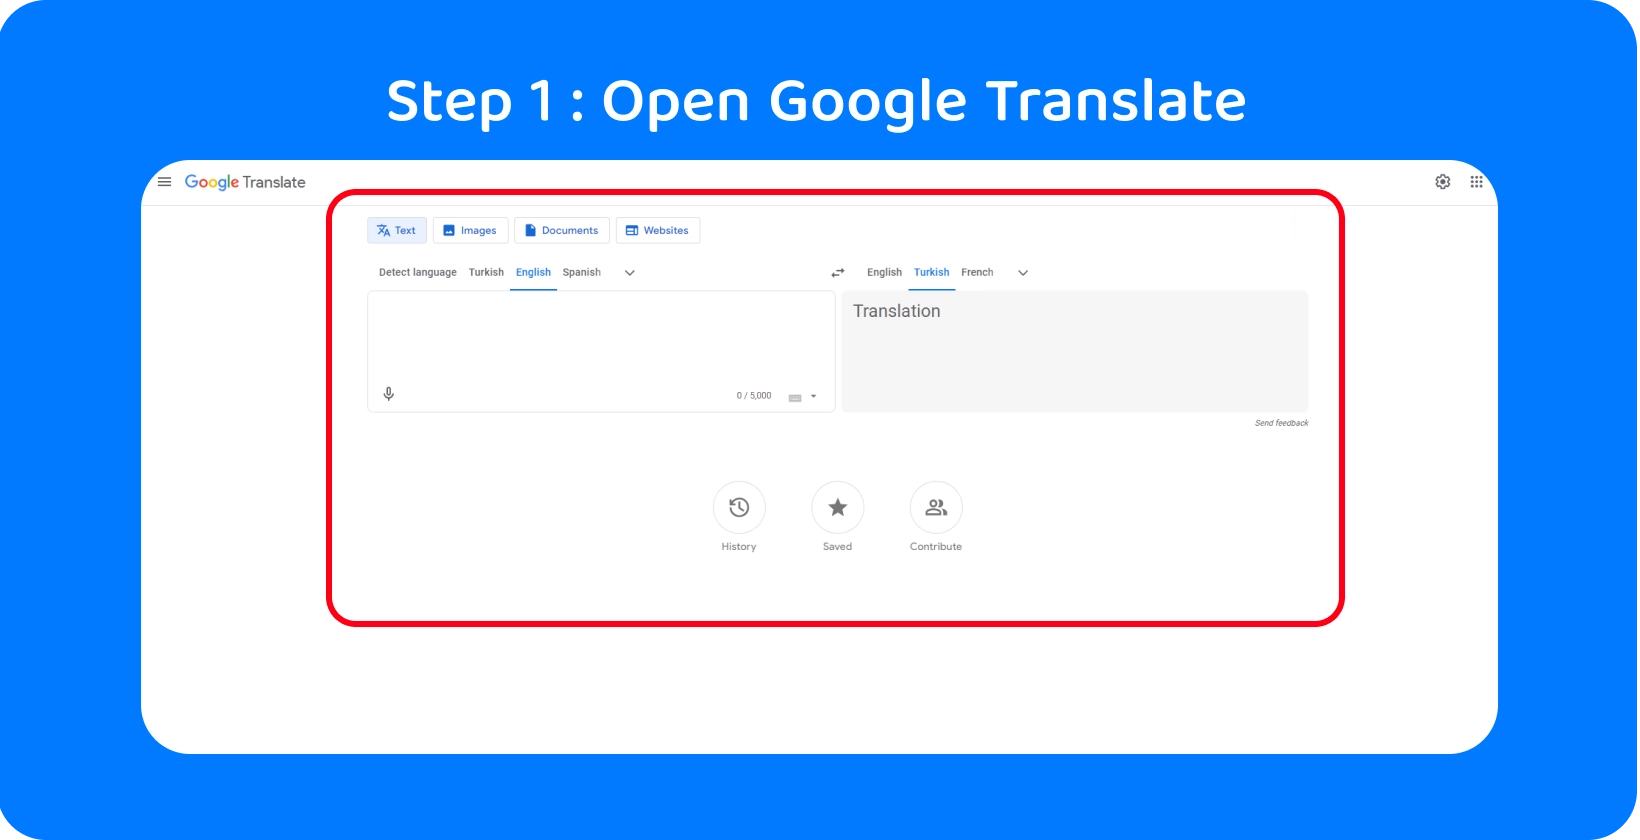 Google Преведи го интерфејсот подготвен за претворање на зборовите во текст, илустрирајќи го Чекор 1 во процесот.